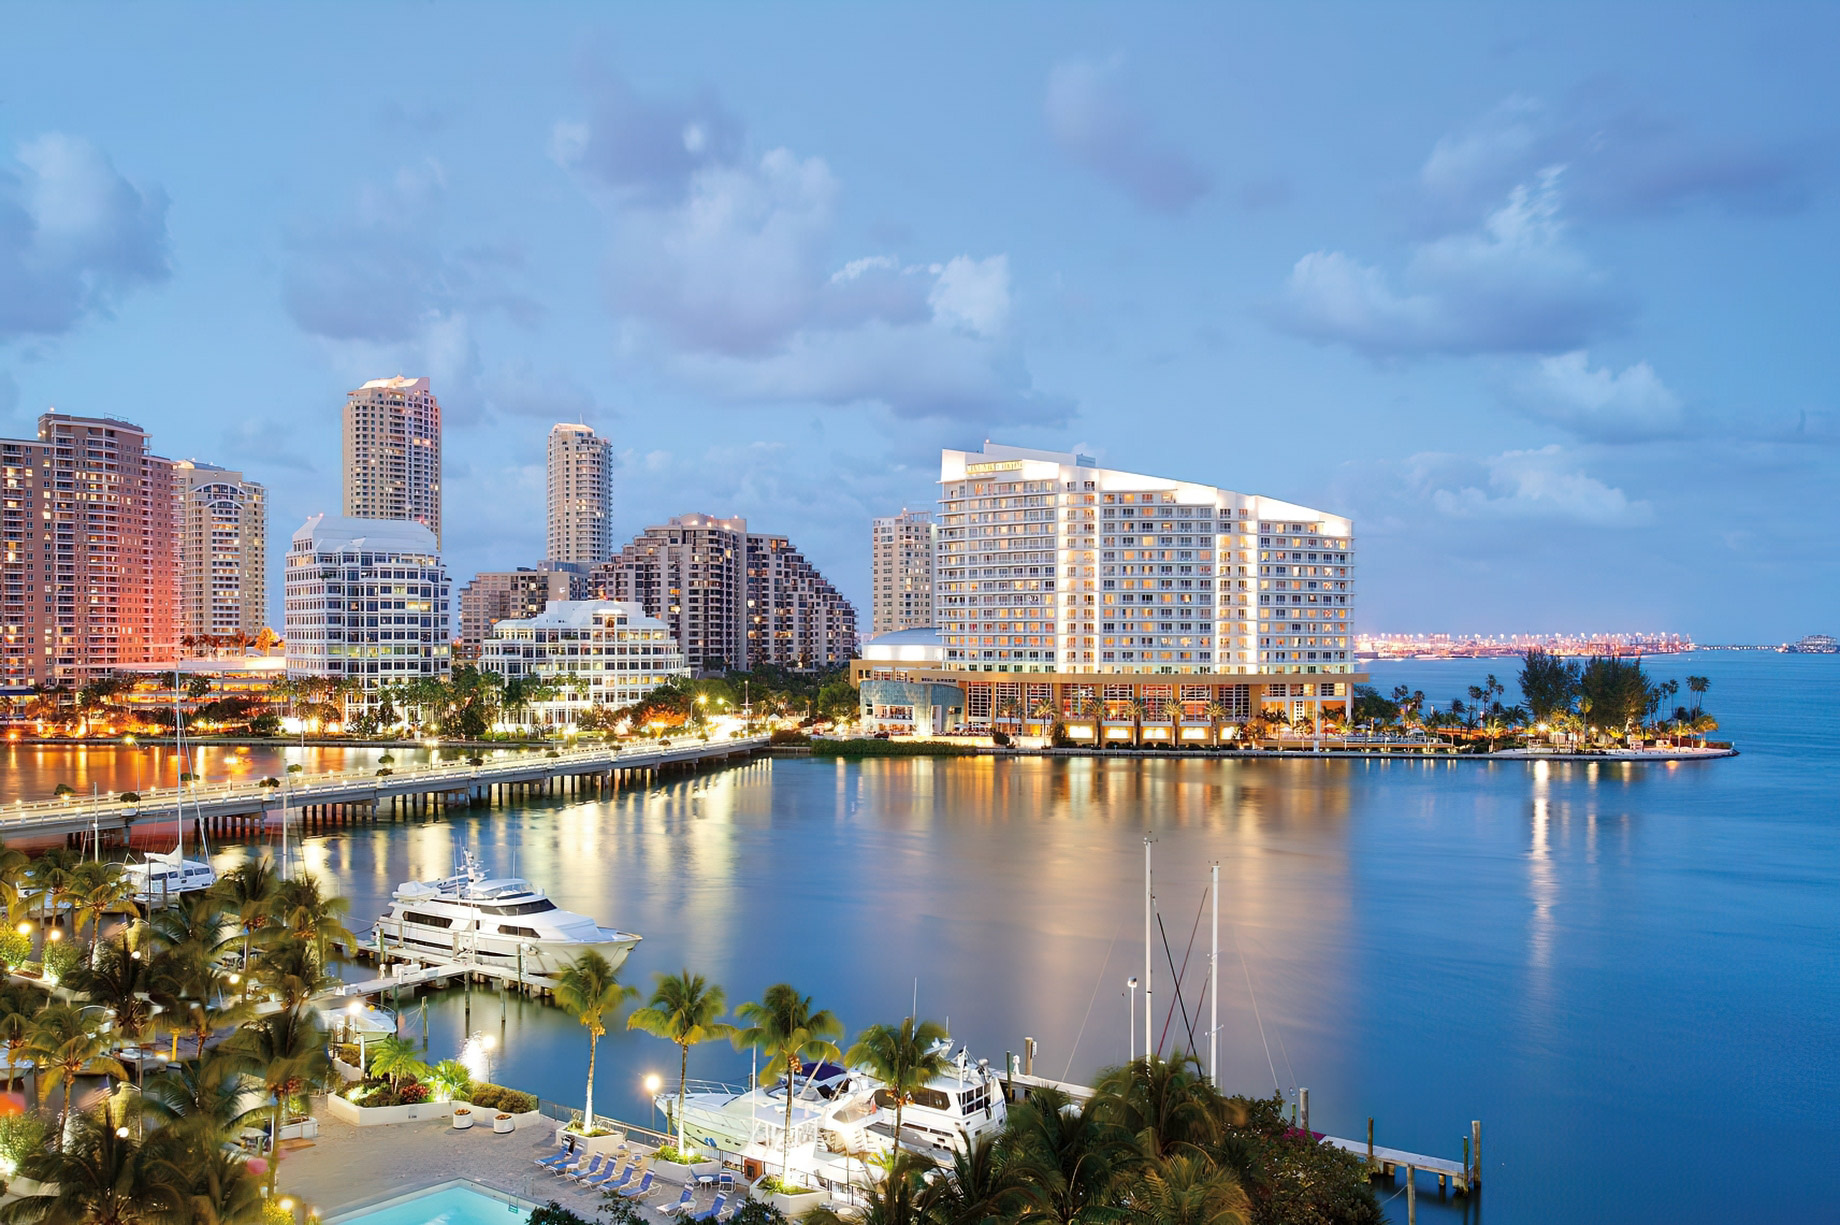 Mandarin Oriental, Miami Hotel - Miami, FL, USA - Exterior View Sunset